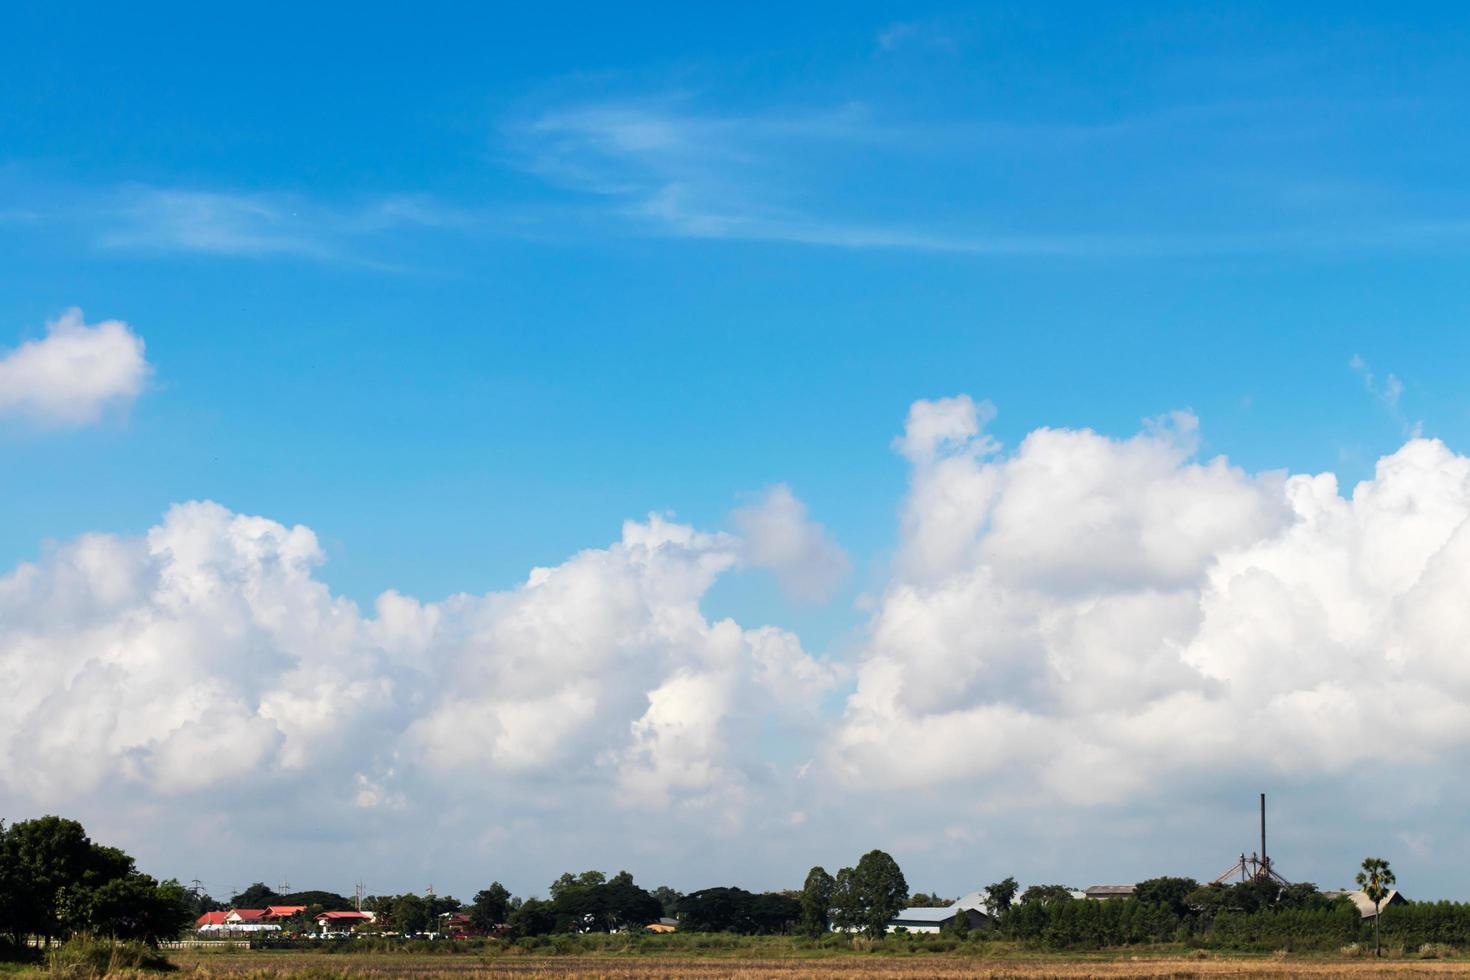 villaggio rurale di cieli nuvolosi. foto